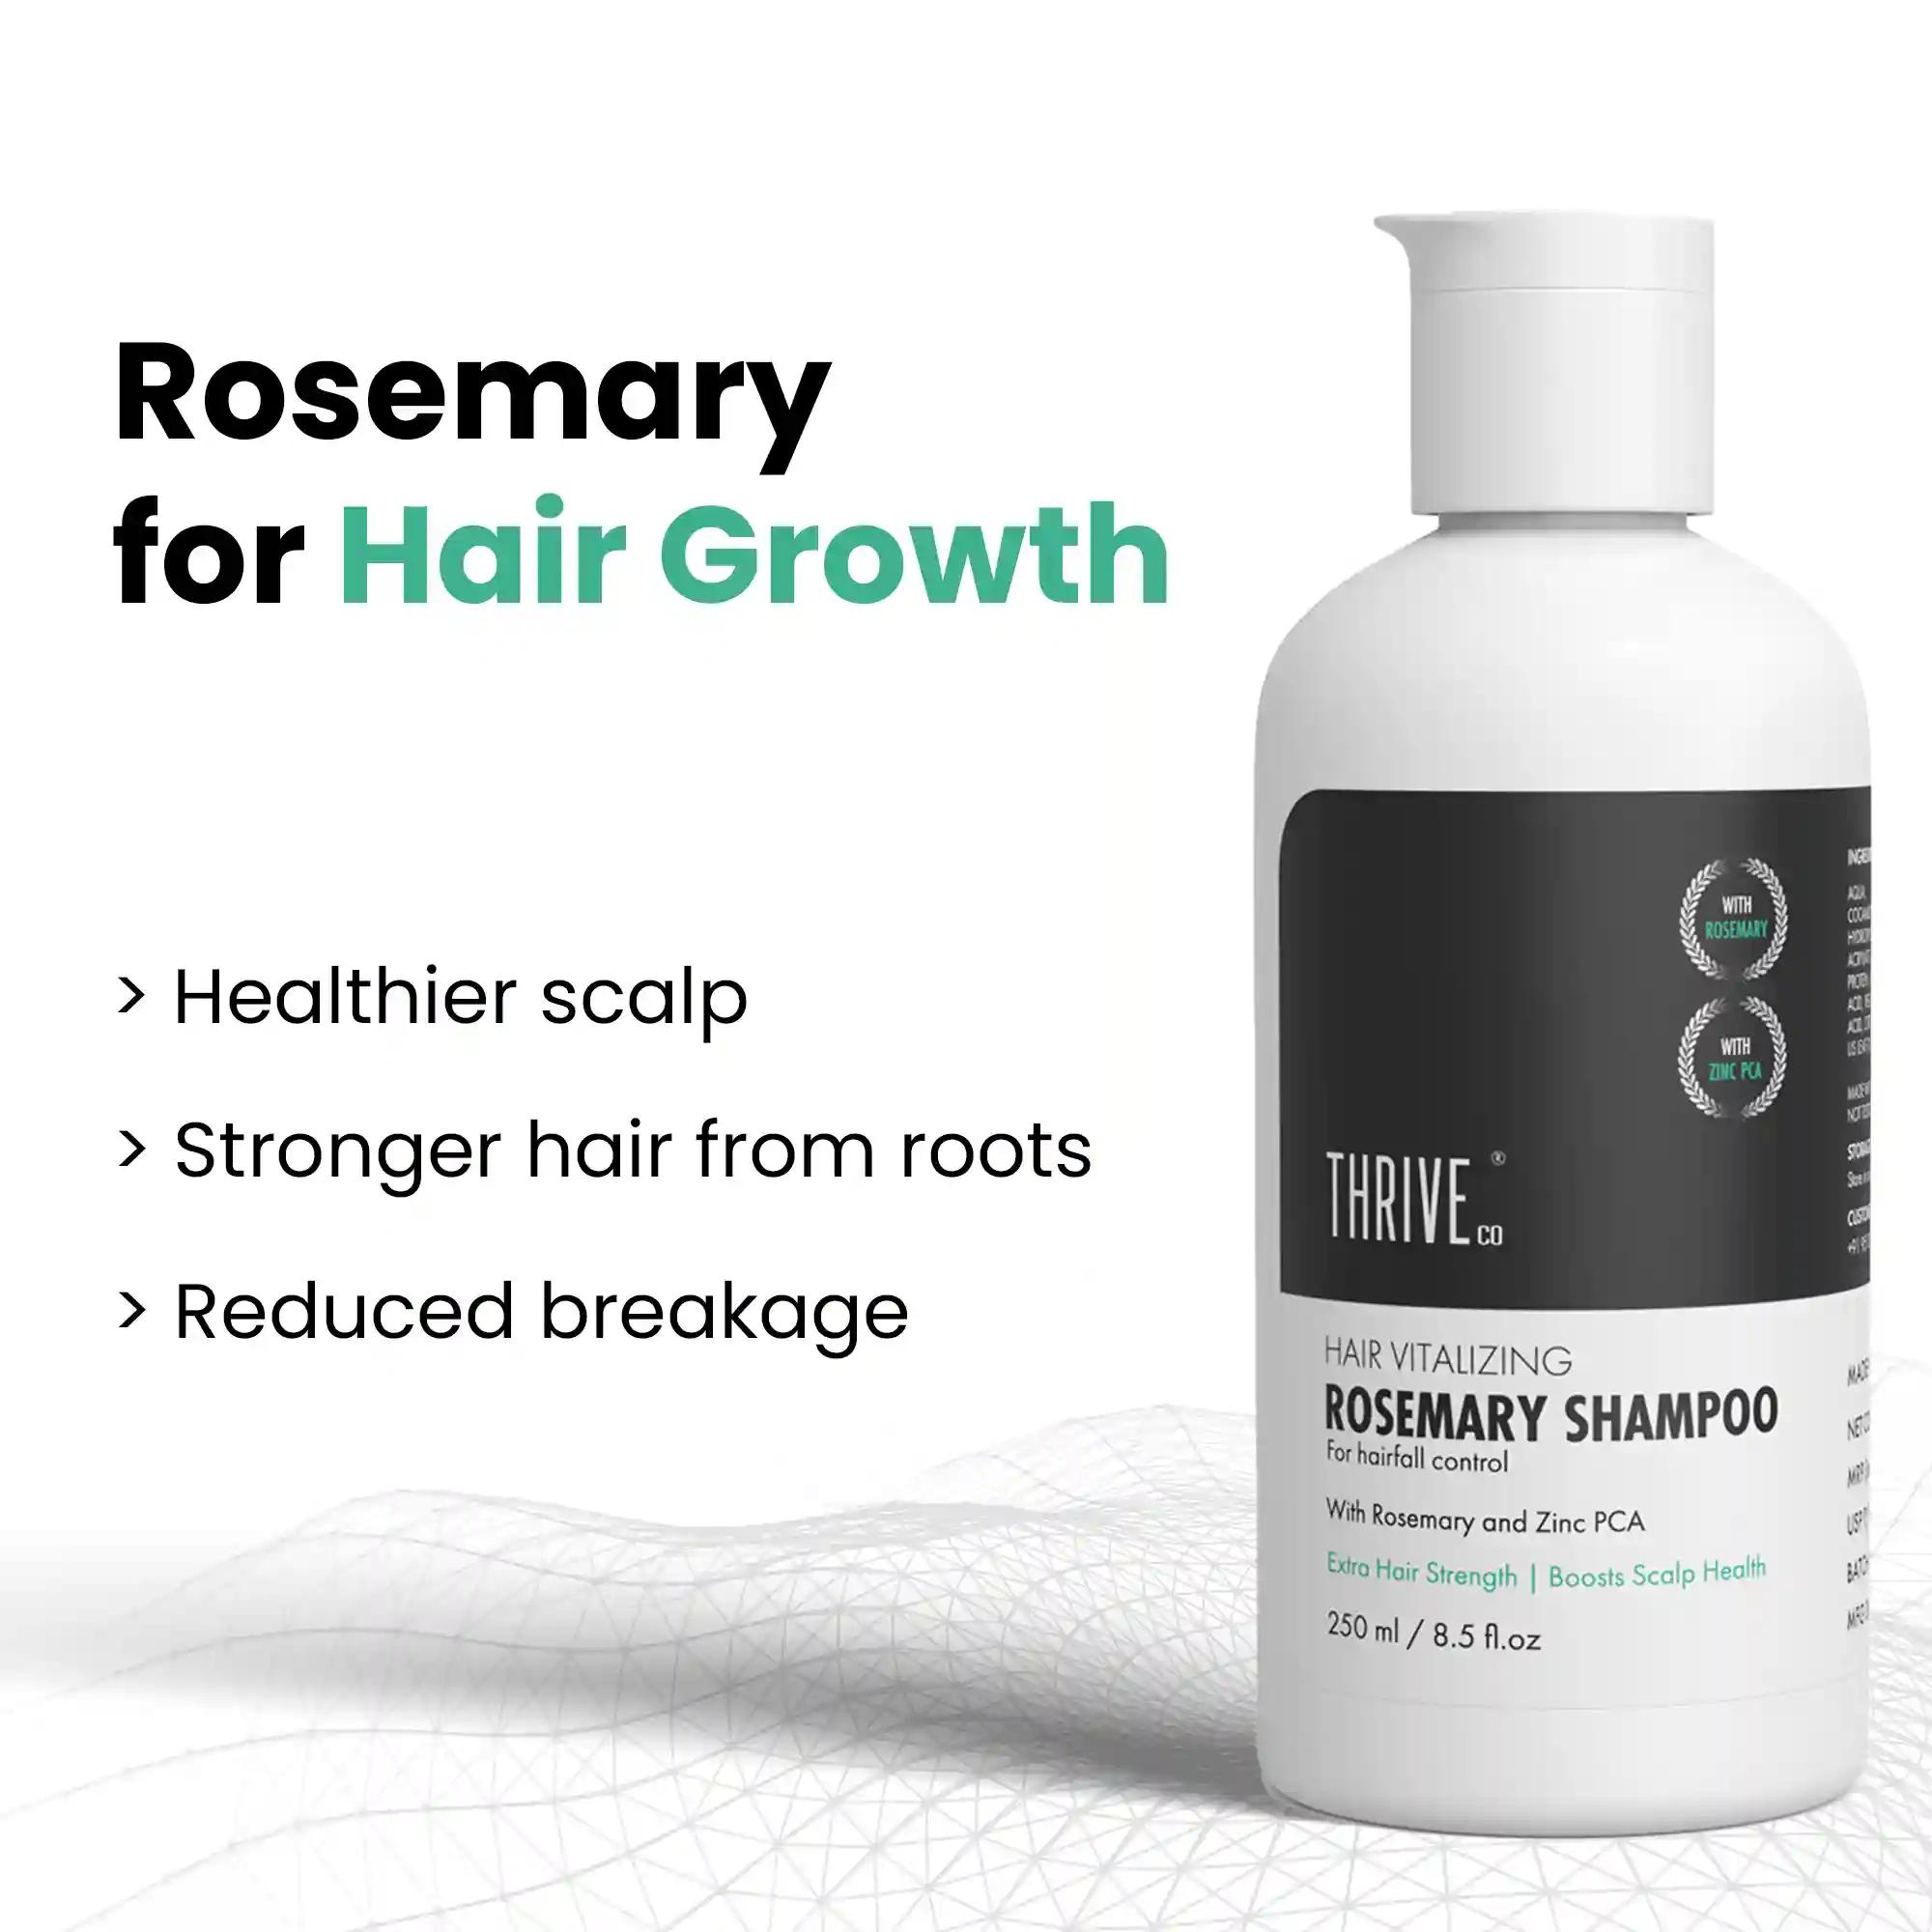 ThriveCo Hair Vitalizing Rosemary Shampoo, 250ml